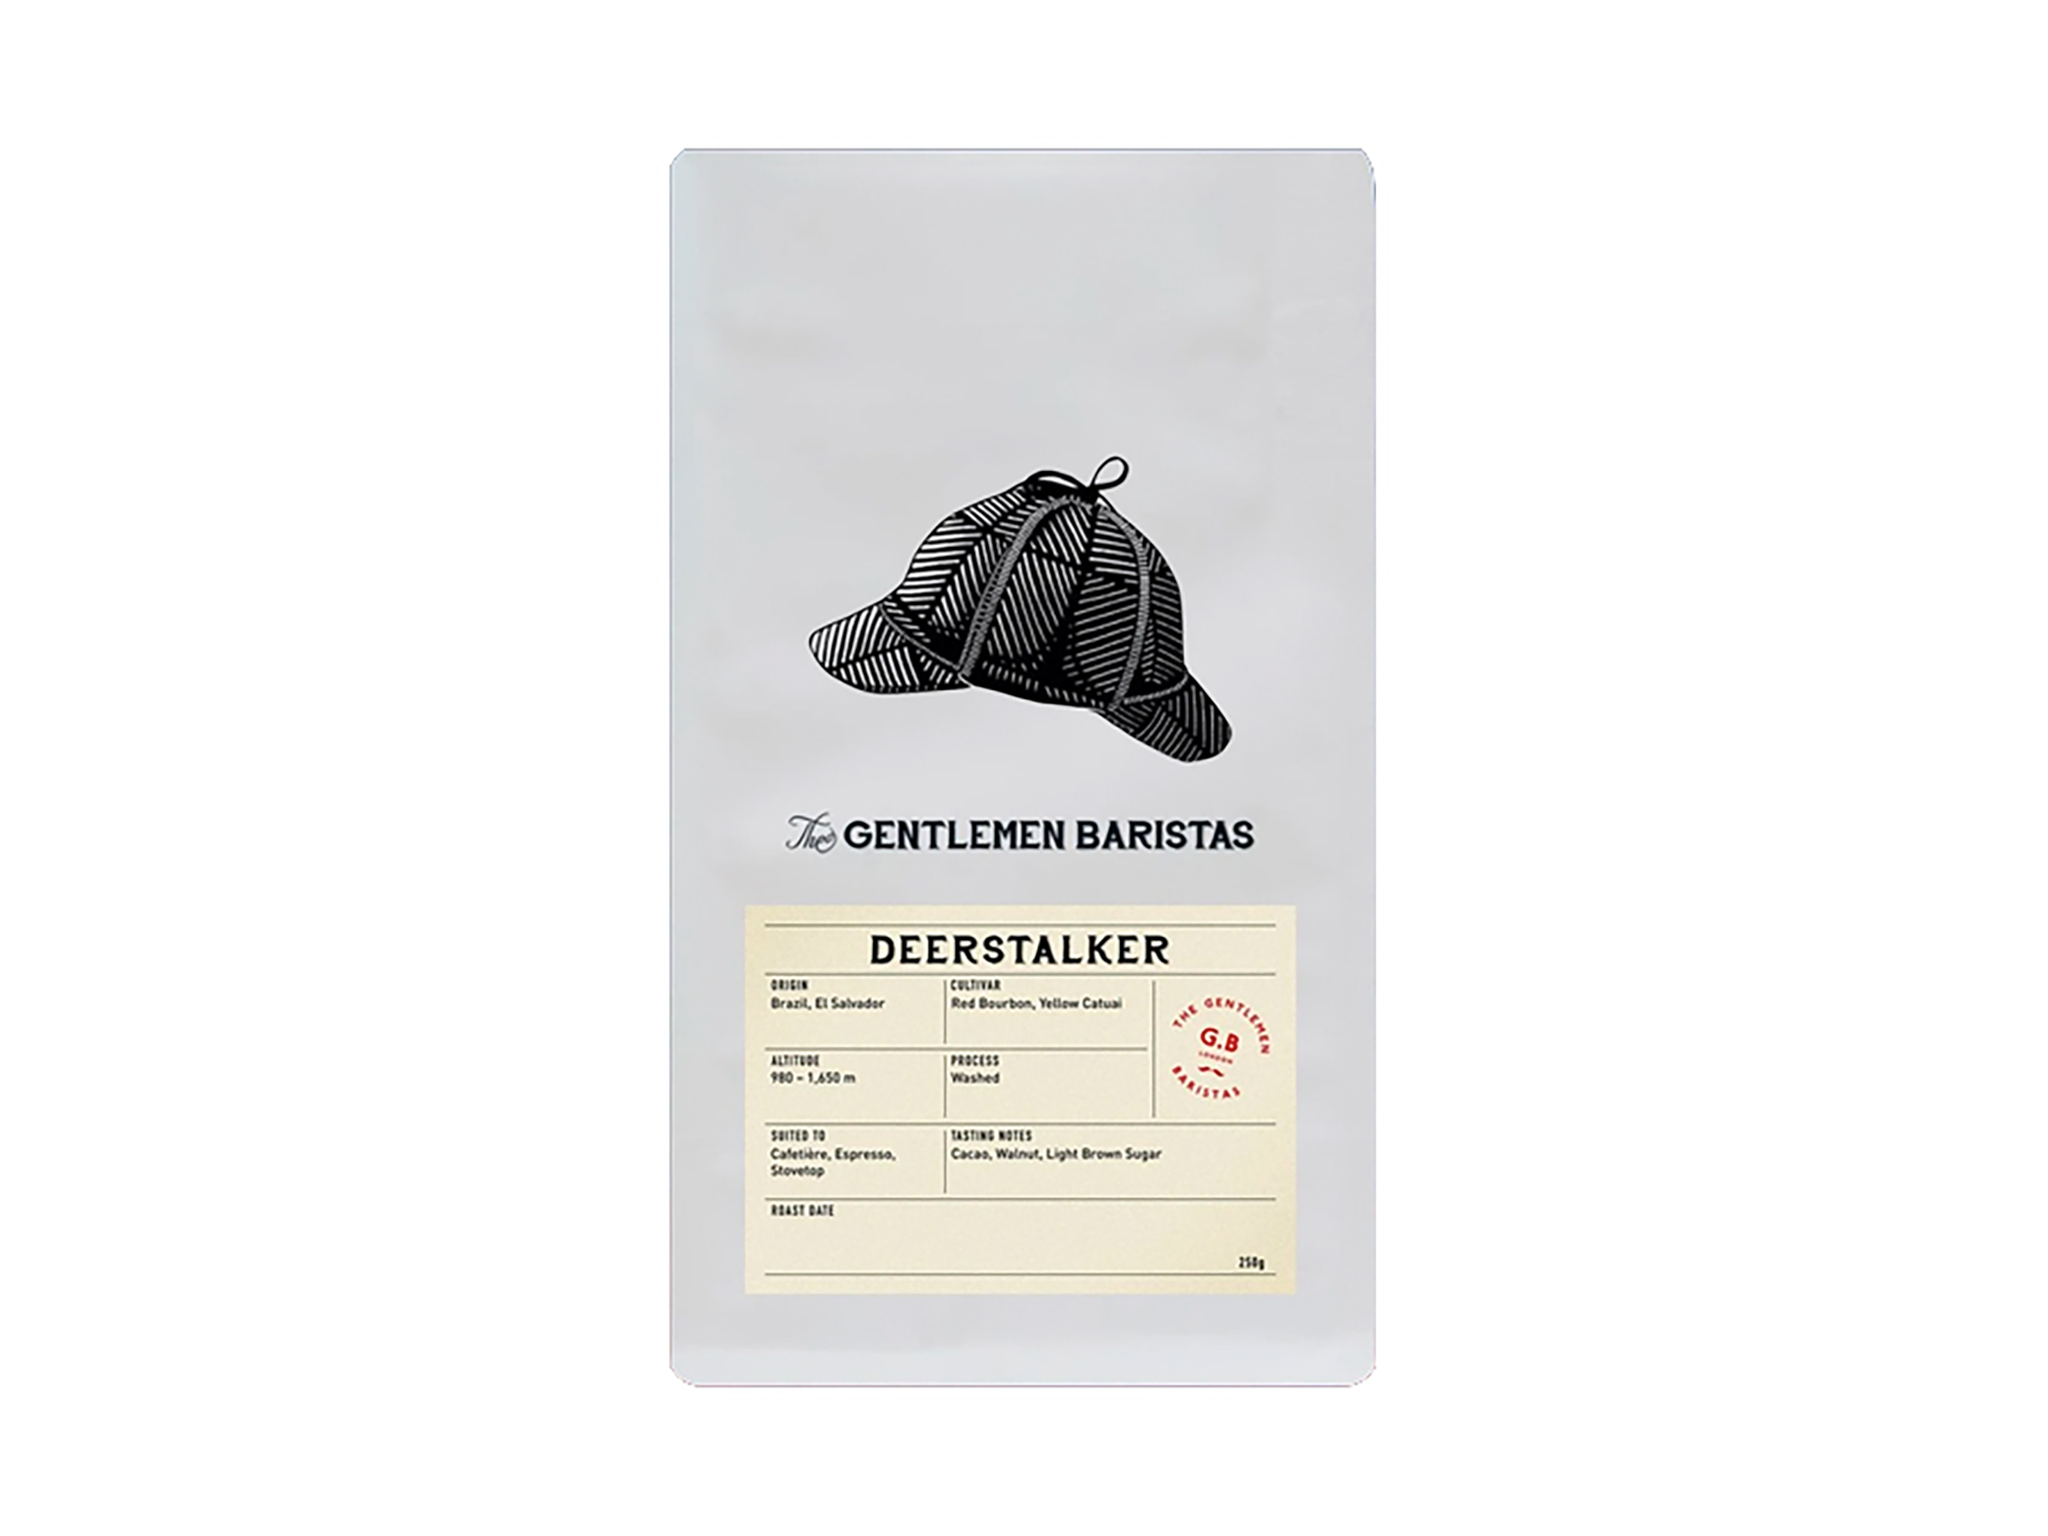 The Gentleman Baristas deerstalker coffee